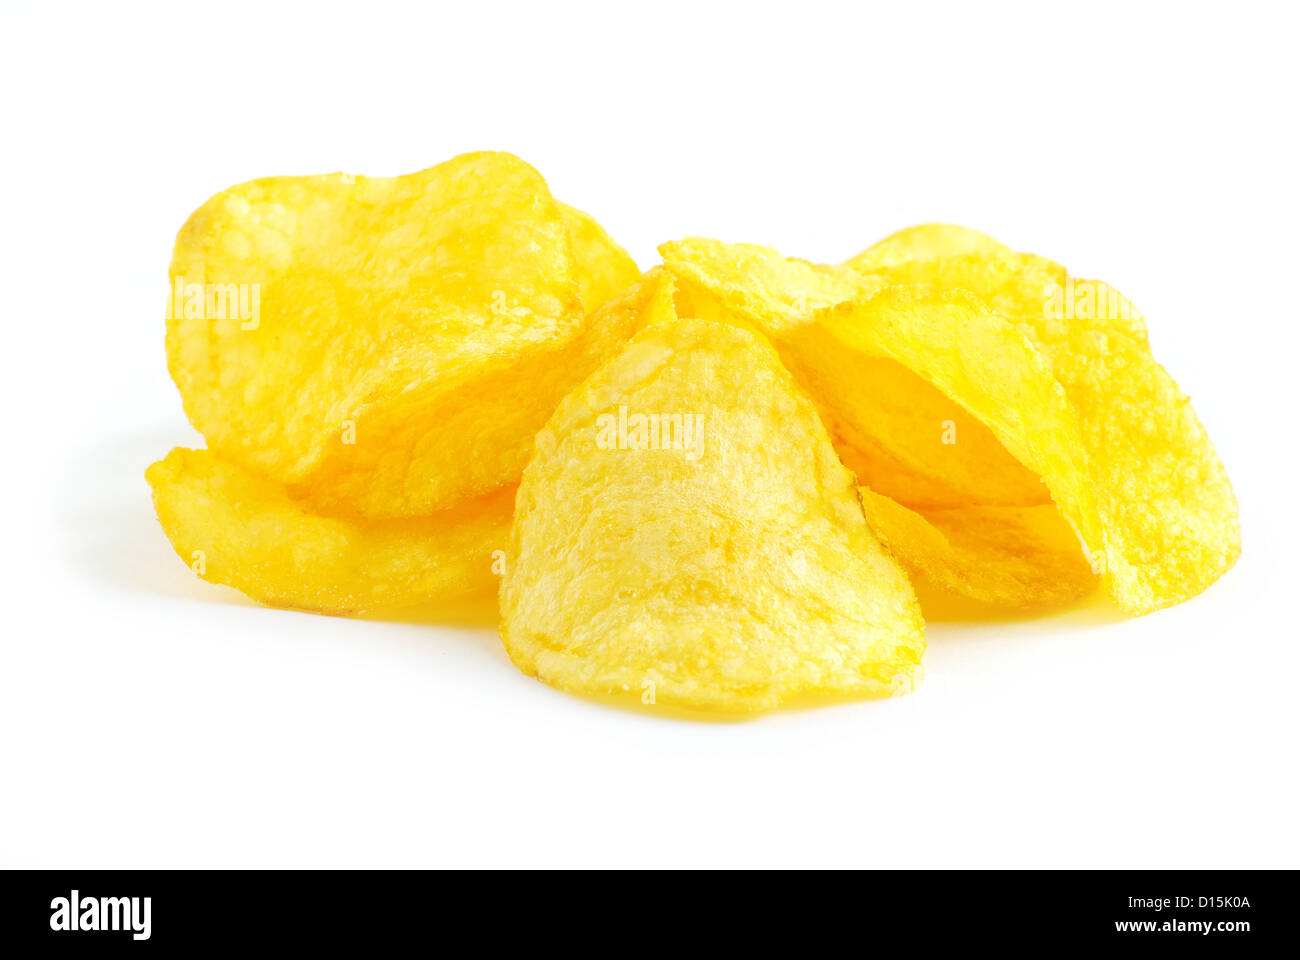 Pomme chips isolé sur fond blanc Banque D'Images